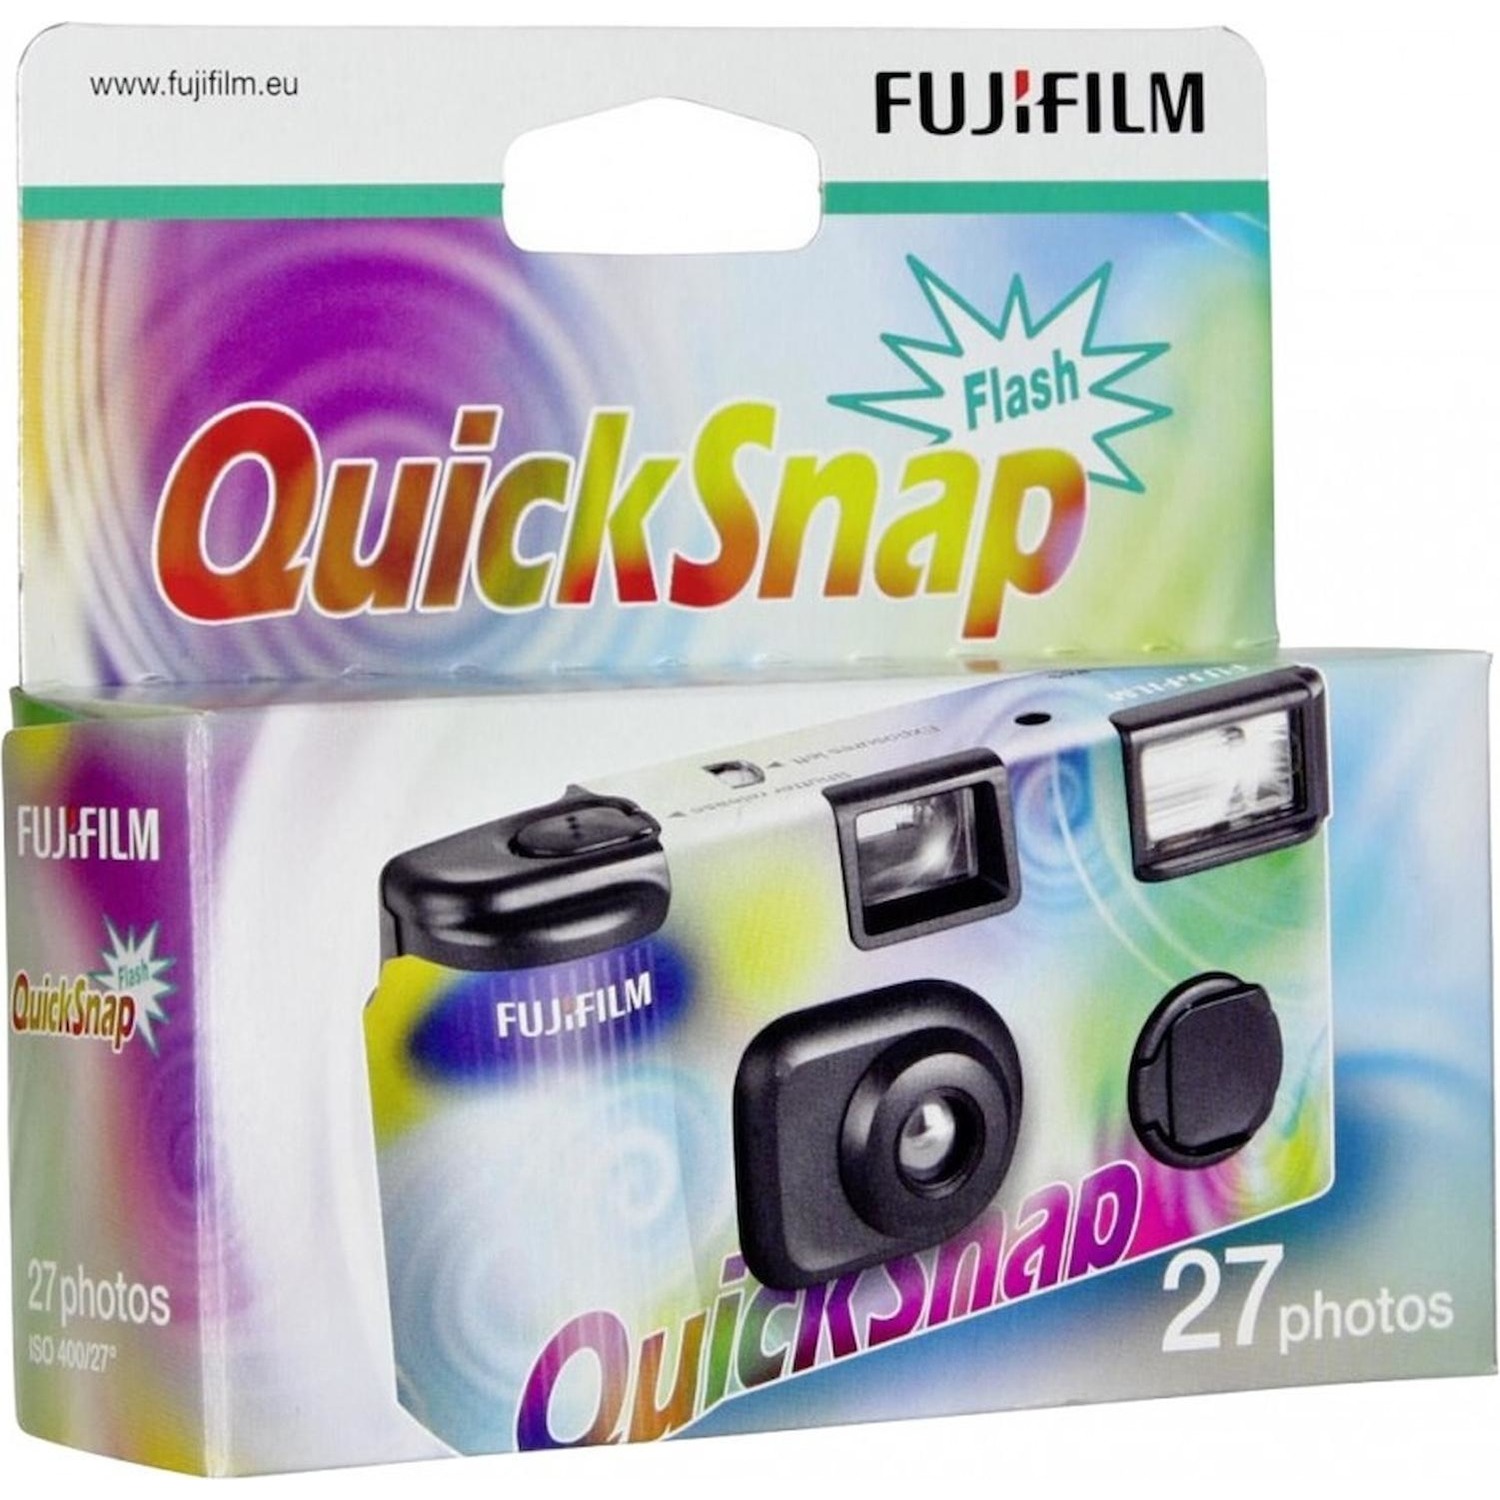 Immagine per Fotocamera Fuji usa e getta QuickSnap Flash       integrato da DIMOStore